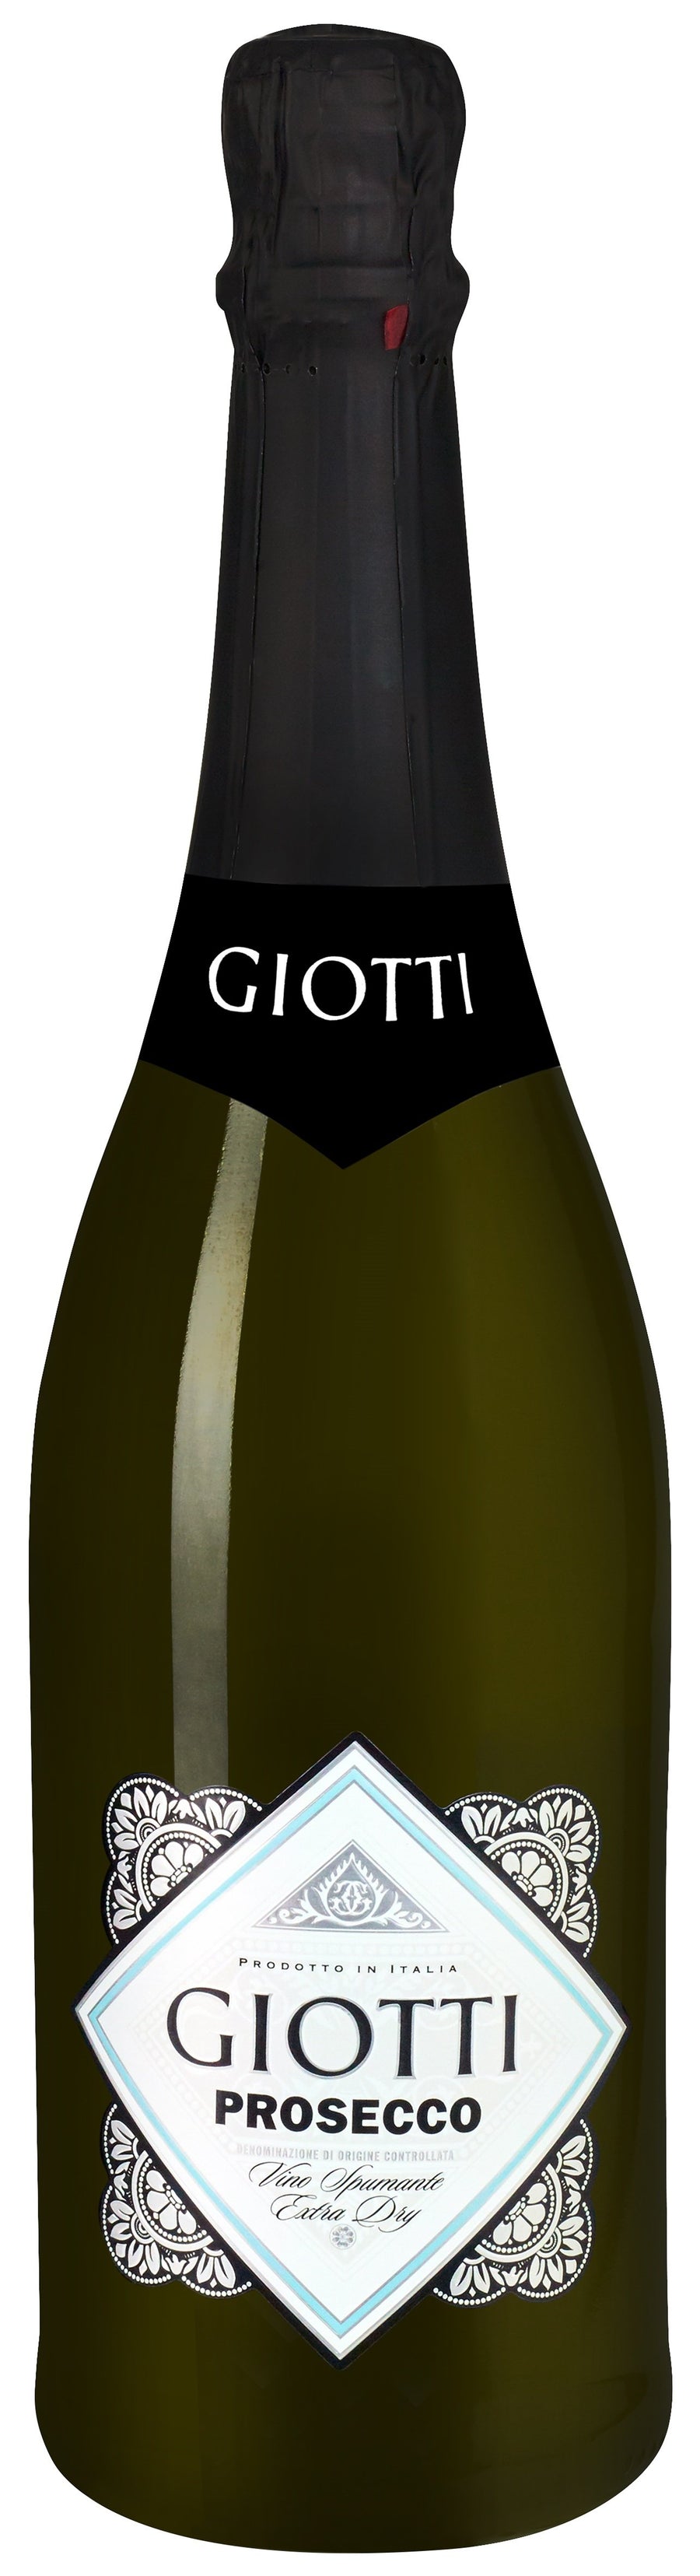 Giotti Prosecco - Liquor Library